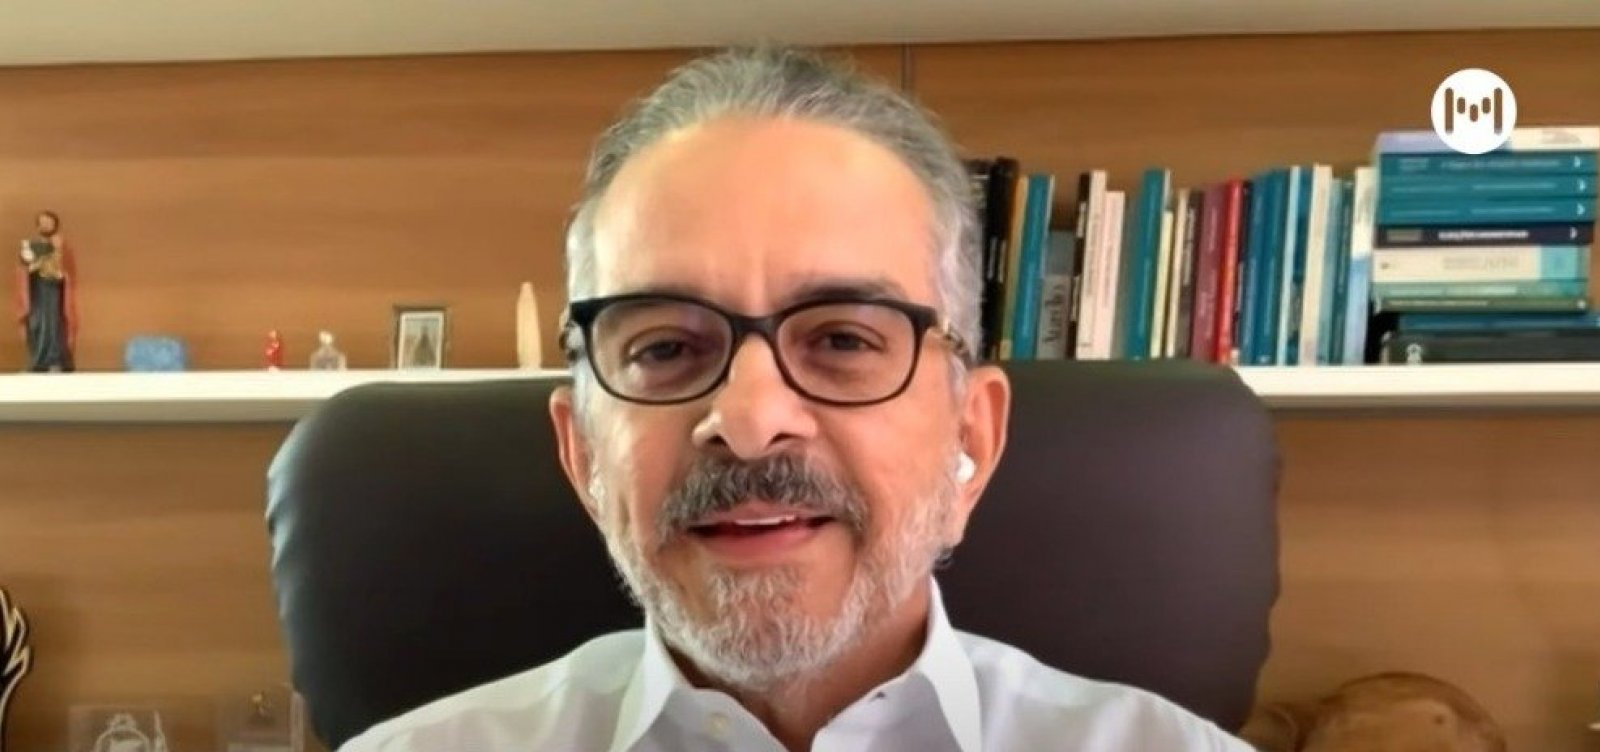 Sociólogo defende criação de data em comemoração ao fim da ditadura militar: "A democracia brasileira deve isso"